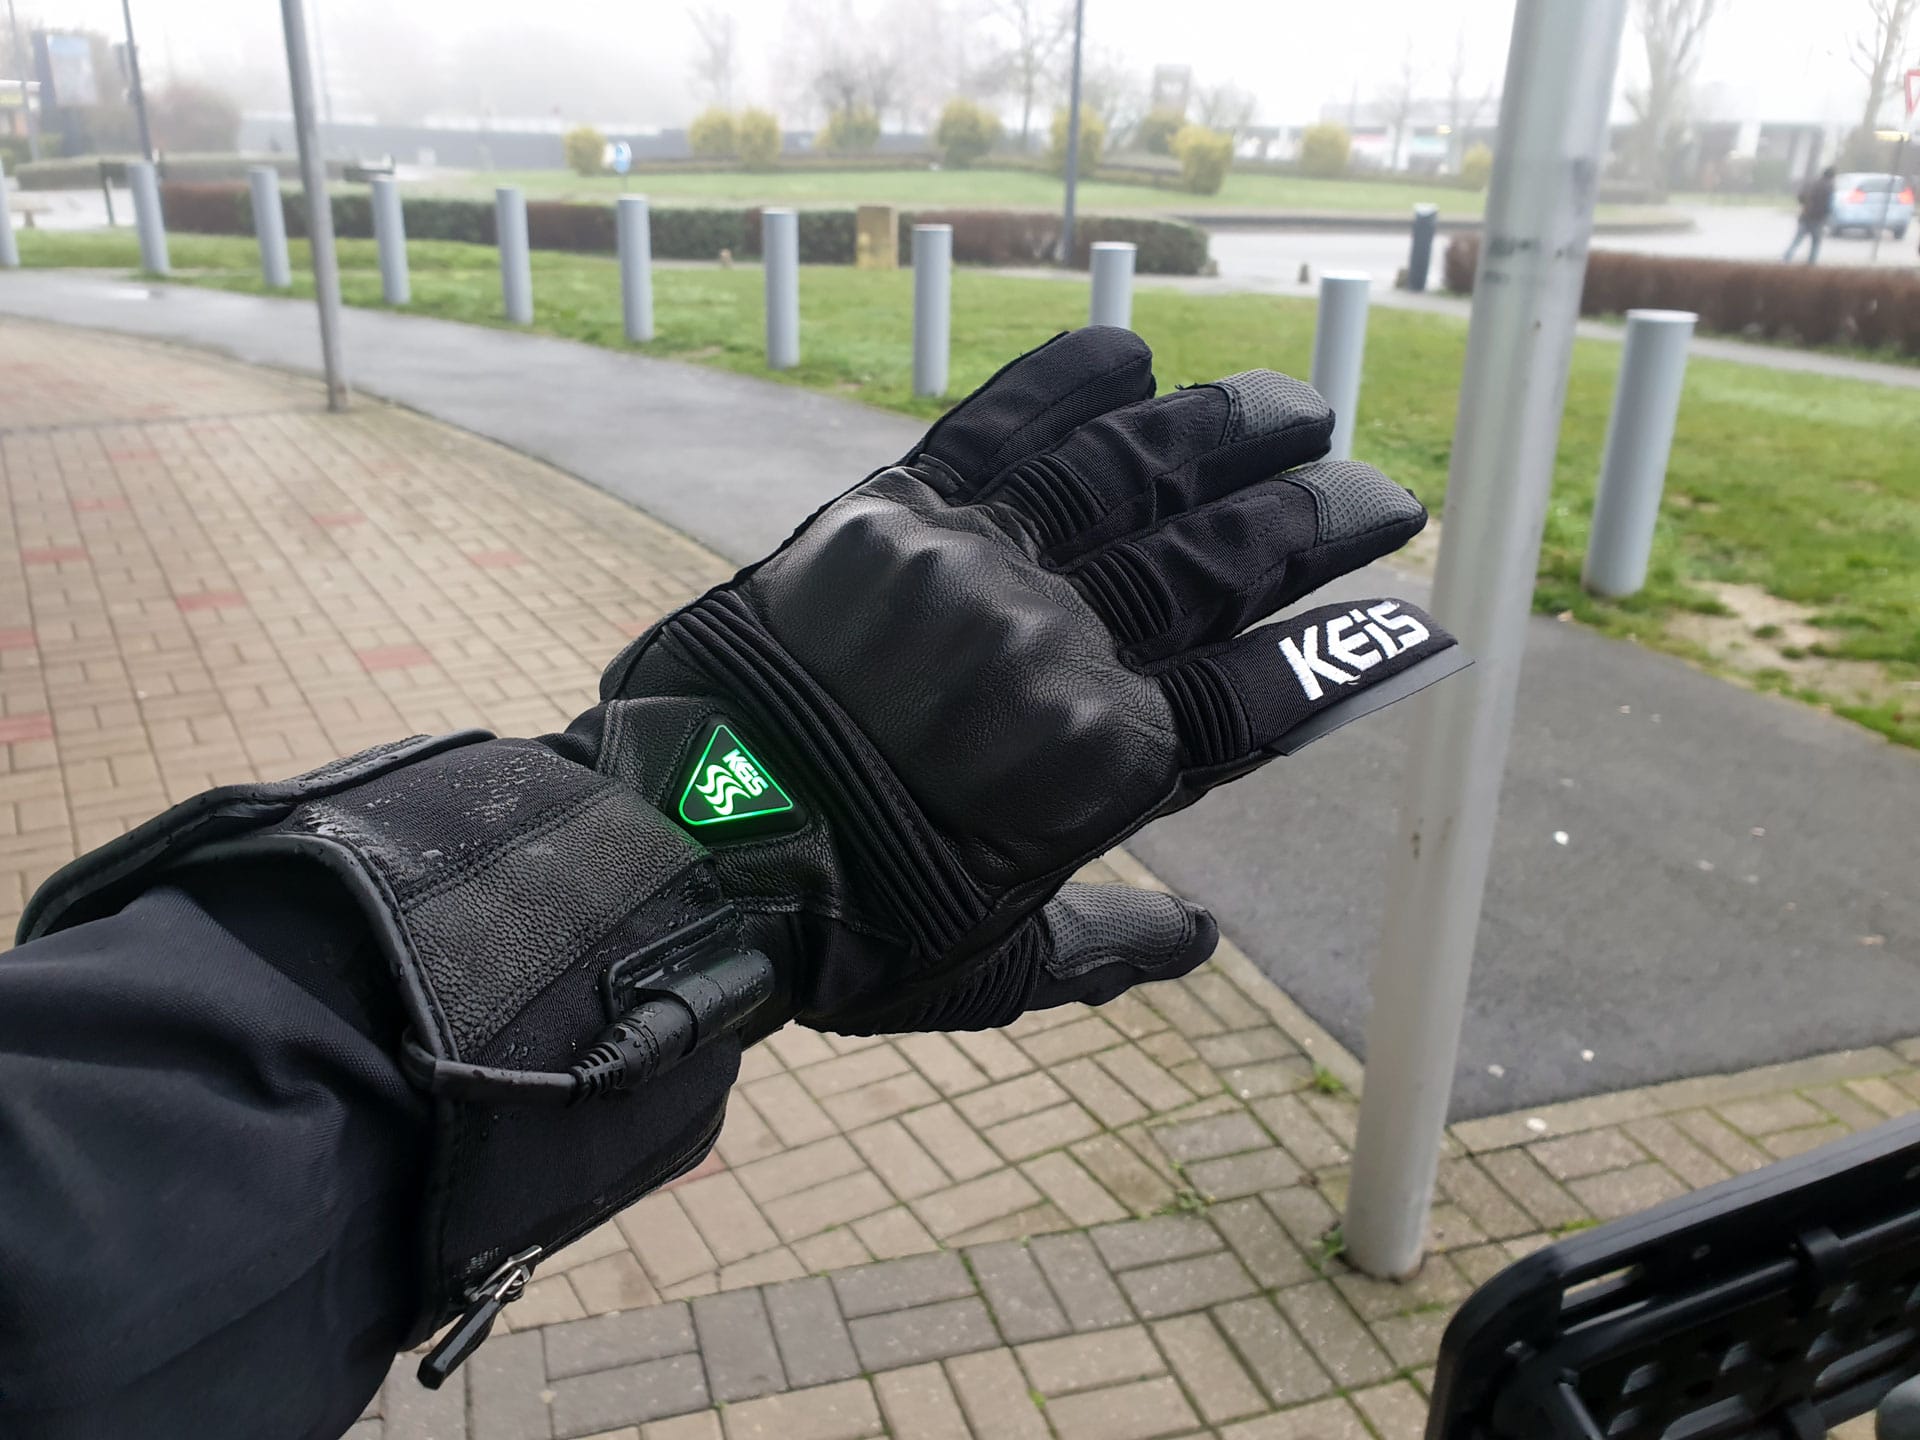 Sous-gants chauffants Keis G102 noirs - Équipement route sur La